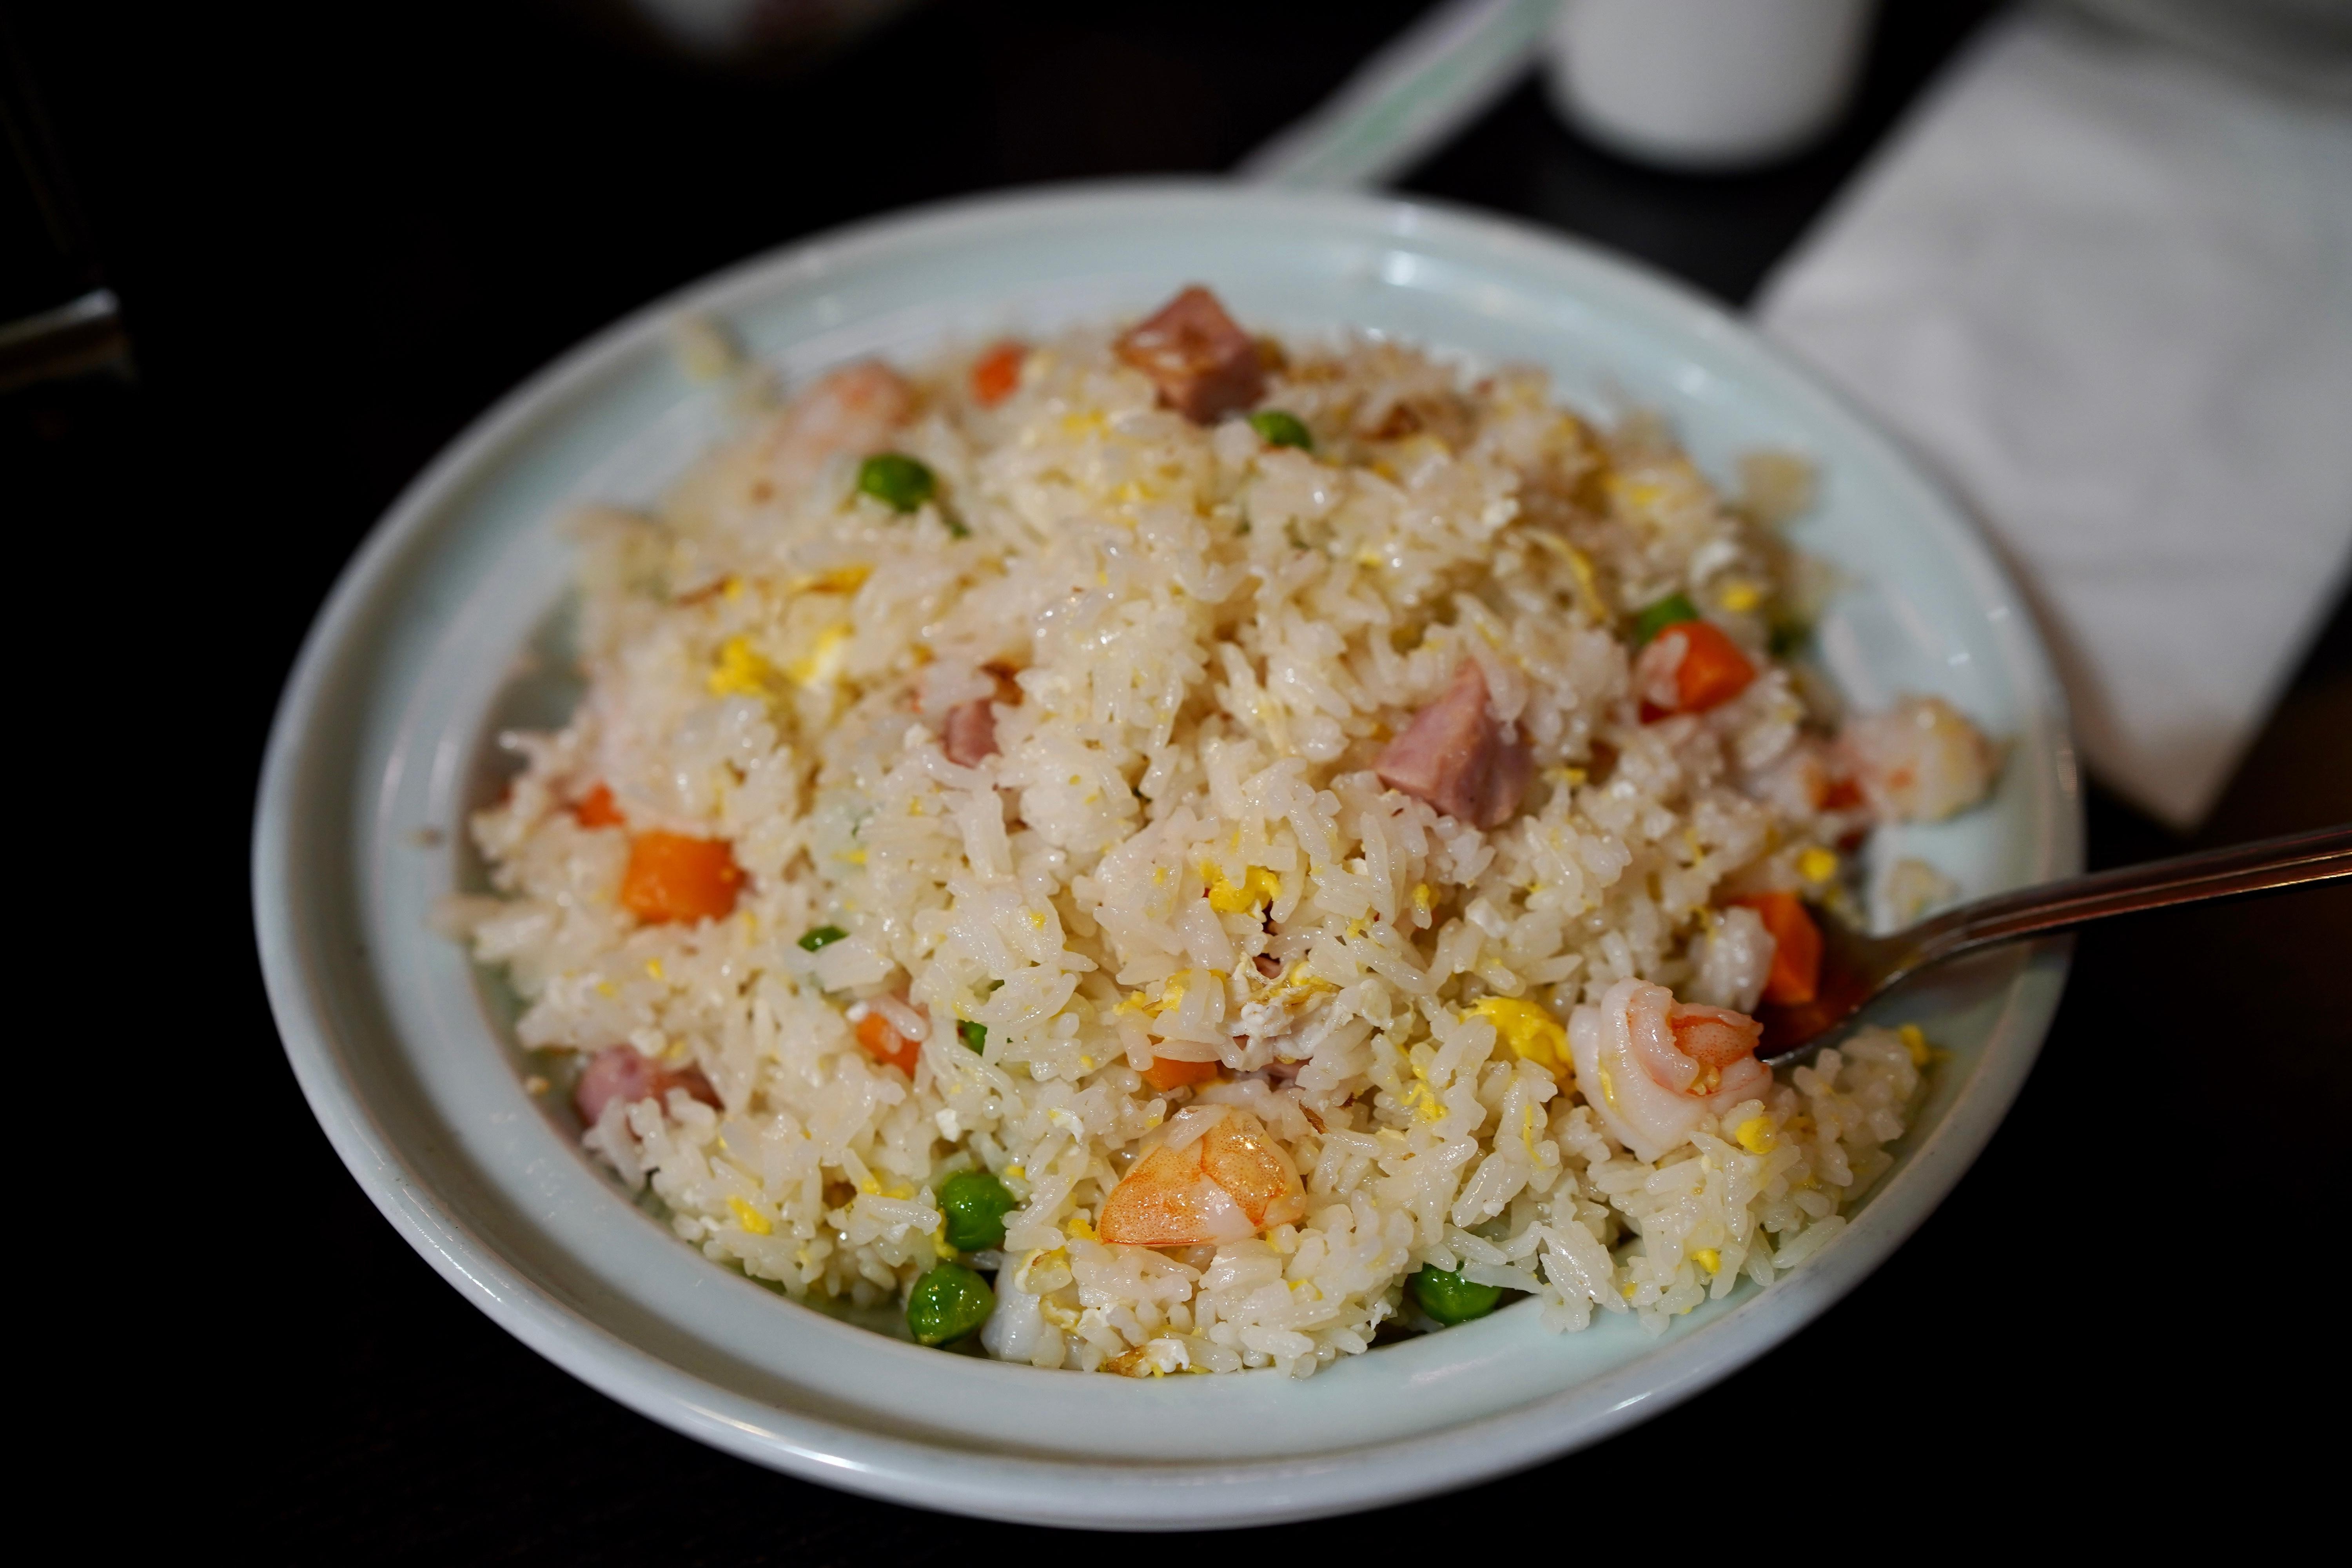 扬州炒饭 Yeung Chwo Fried Rice